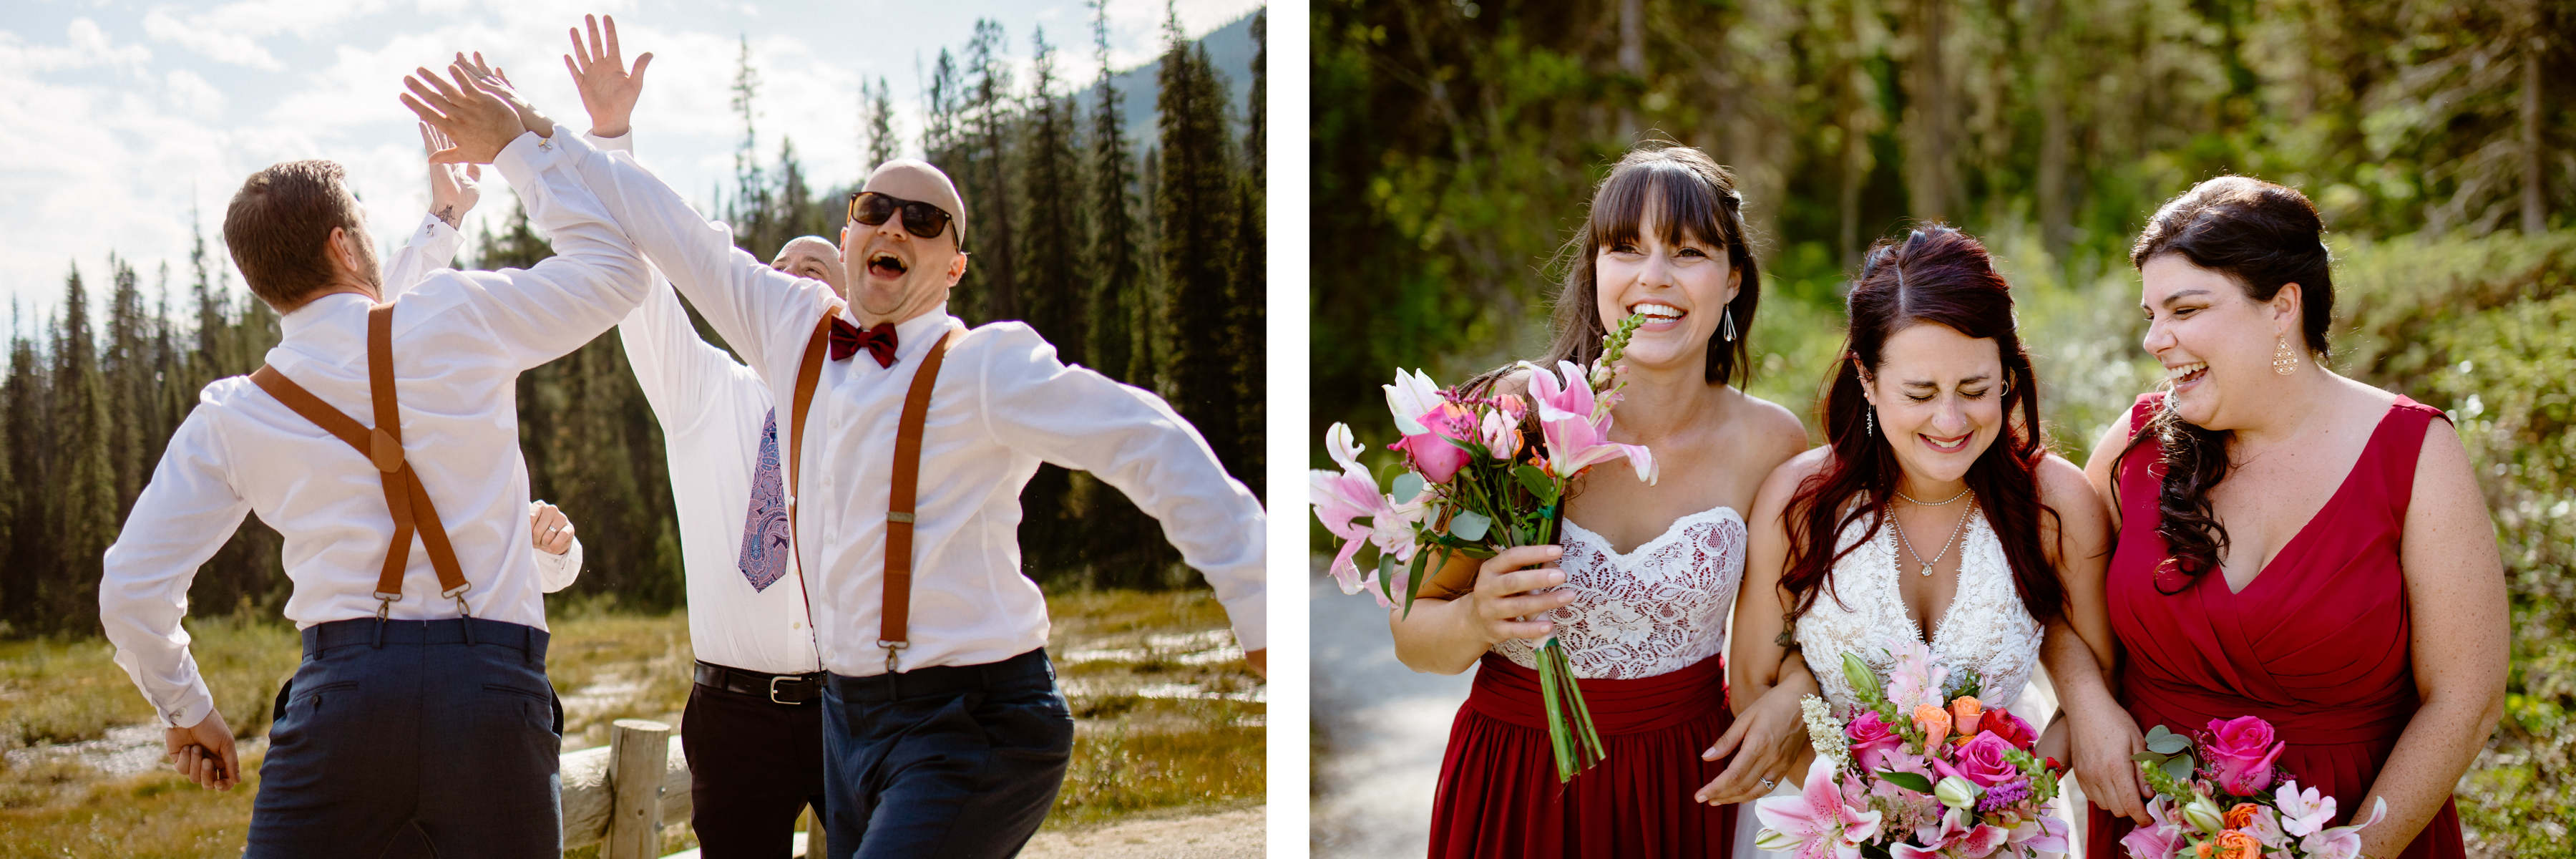 Emerald Lake Wedding Photographers - Image 26